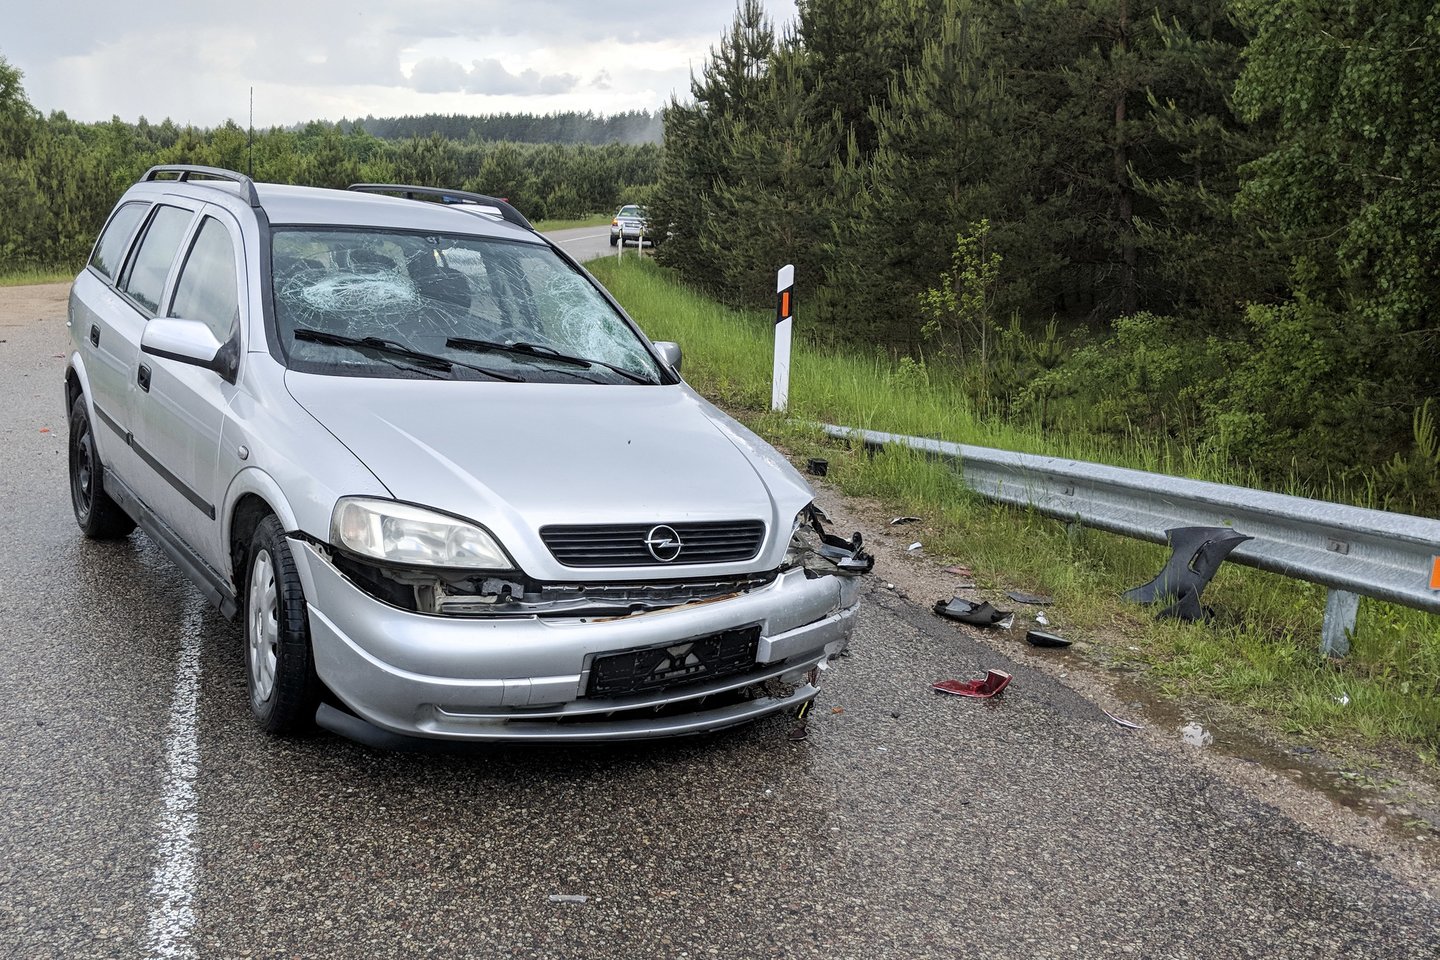  Ketvirtadienį Vilniaus rajone automobilis susidūrė su motoroleriu. Pastarojo vairuotojas neišgyveno.<br> T.Bauro nuotr.